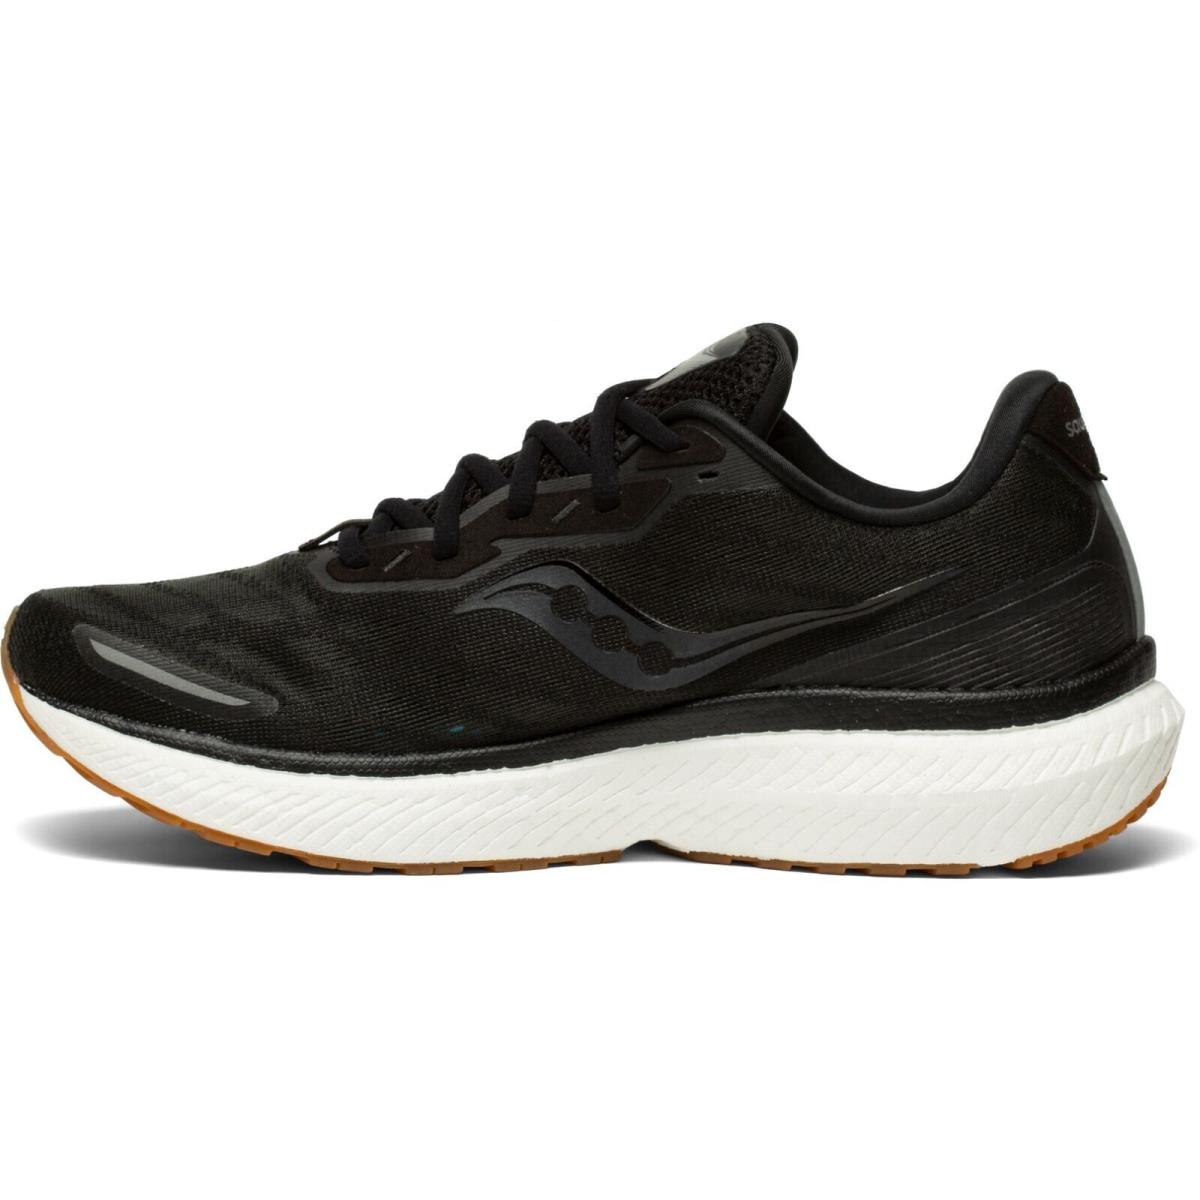 Saucony shoes Triumph - Black 1